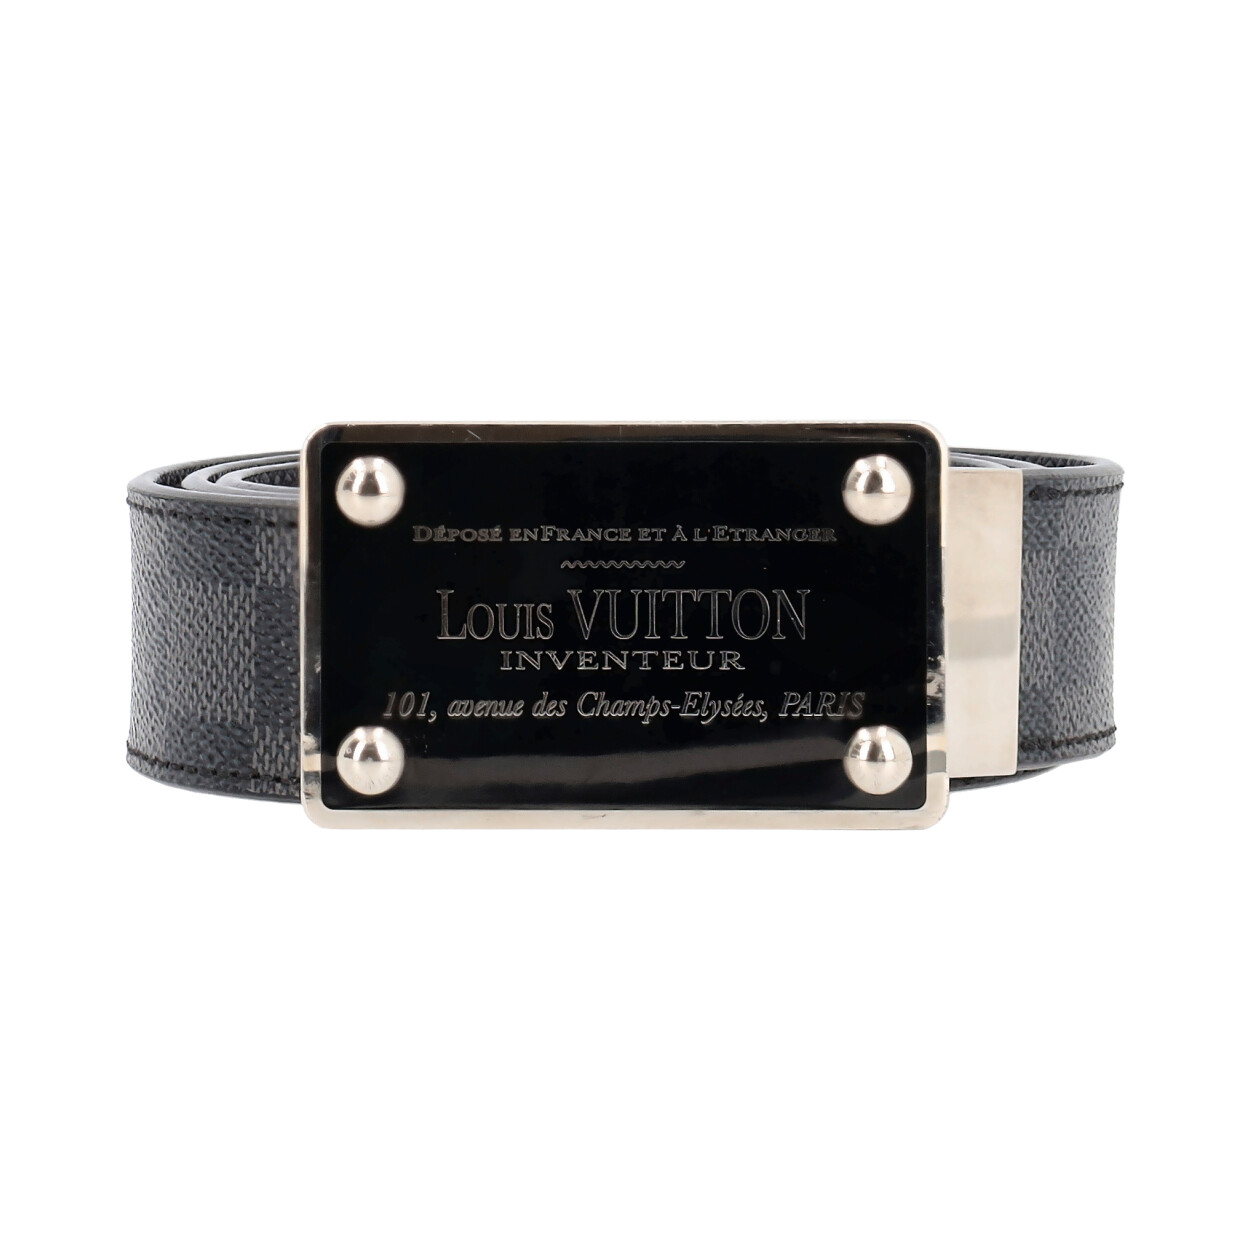 Louis Vuitton – Inventeur Reversible Belt Damier Graphite 85 cm